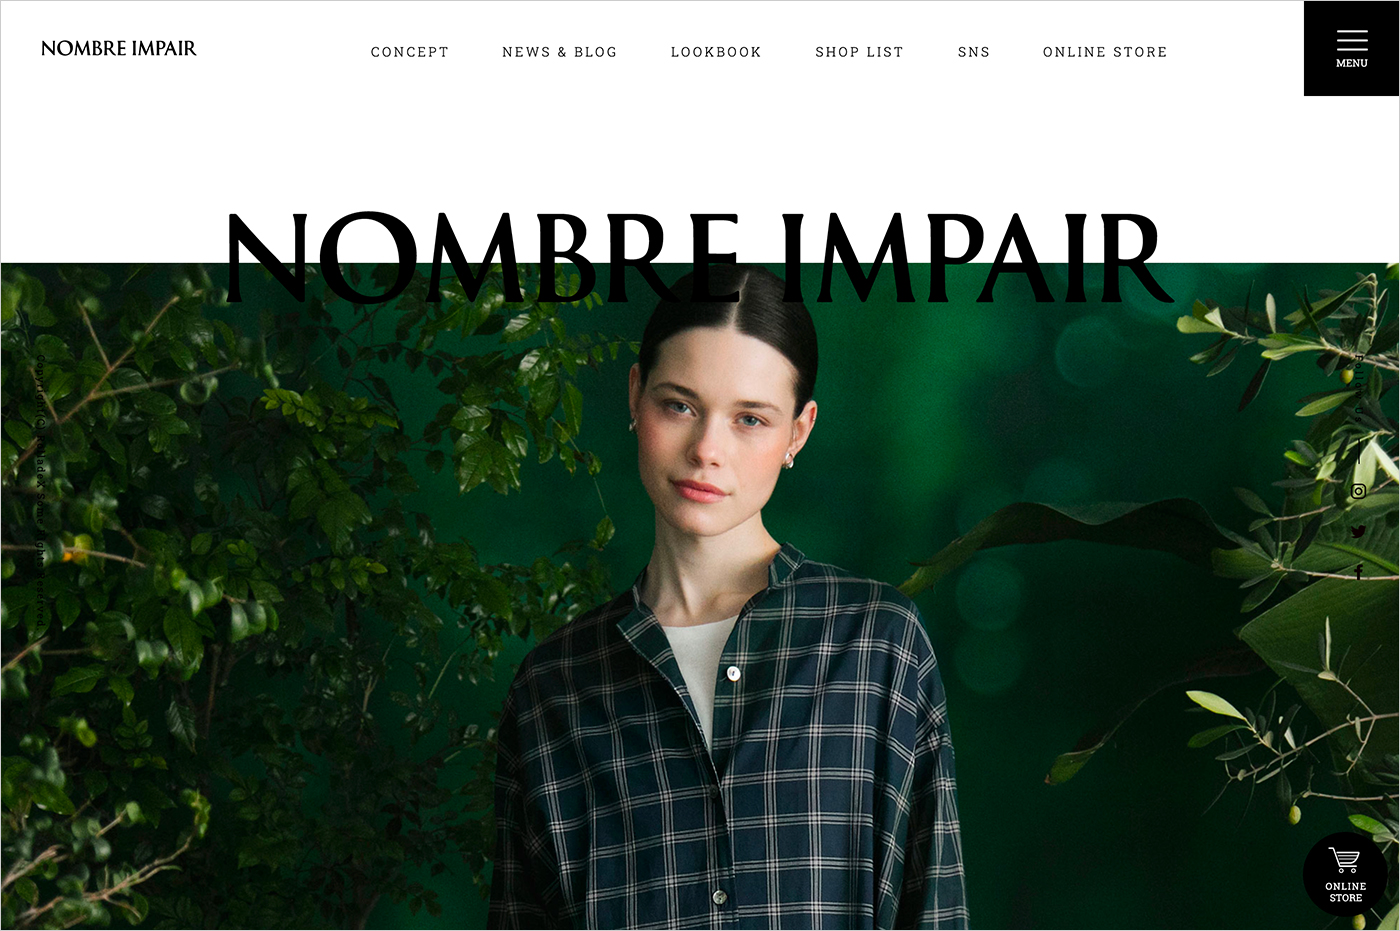 NOMBRE IMPAIRウェブサイトの画面キャプチャ画像